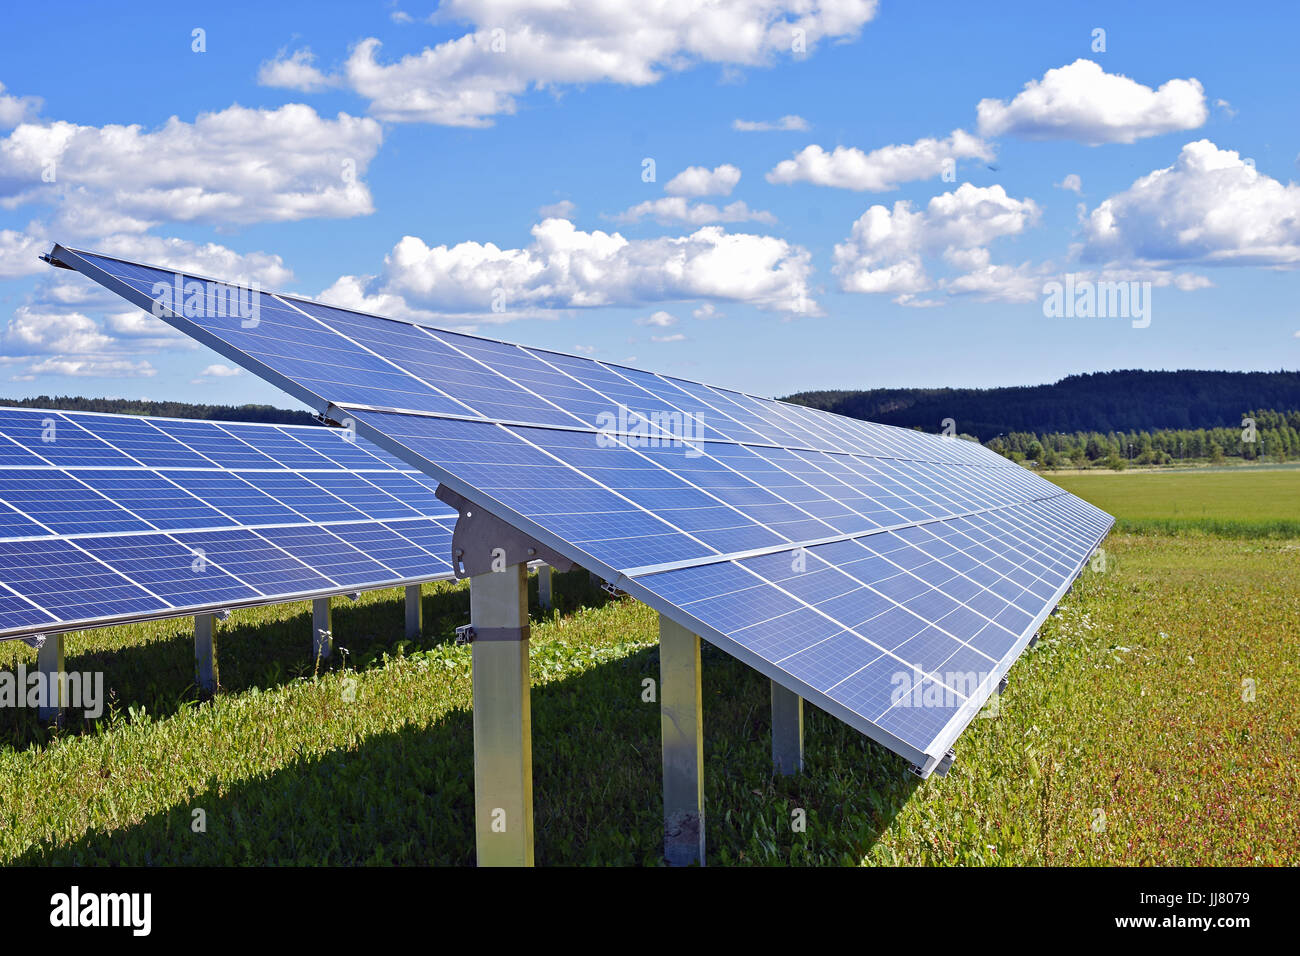 Solar panels on field. Stock Photo